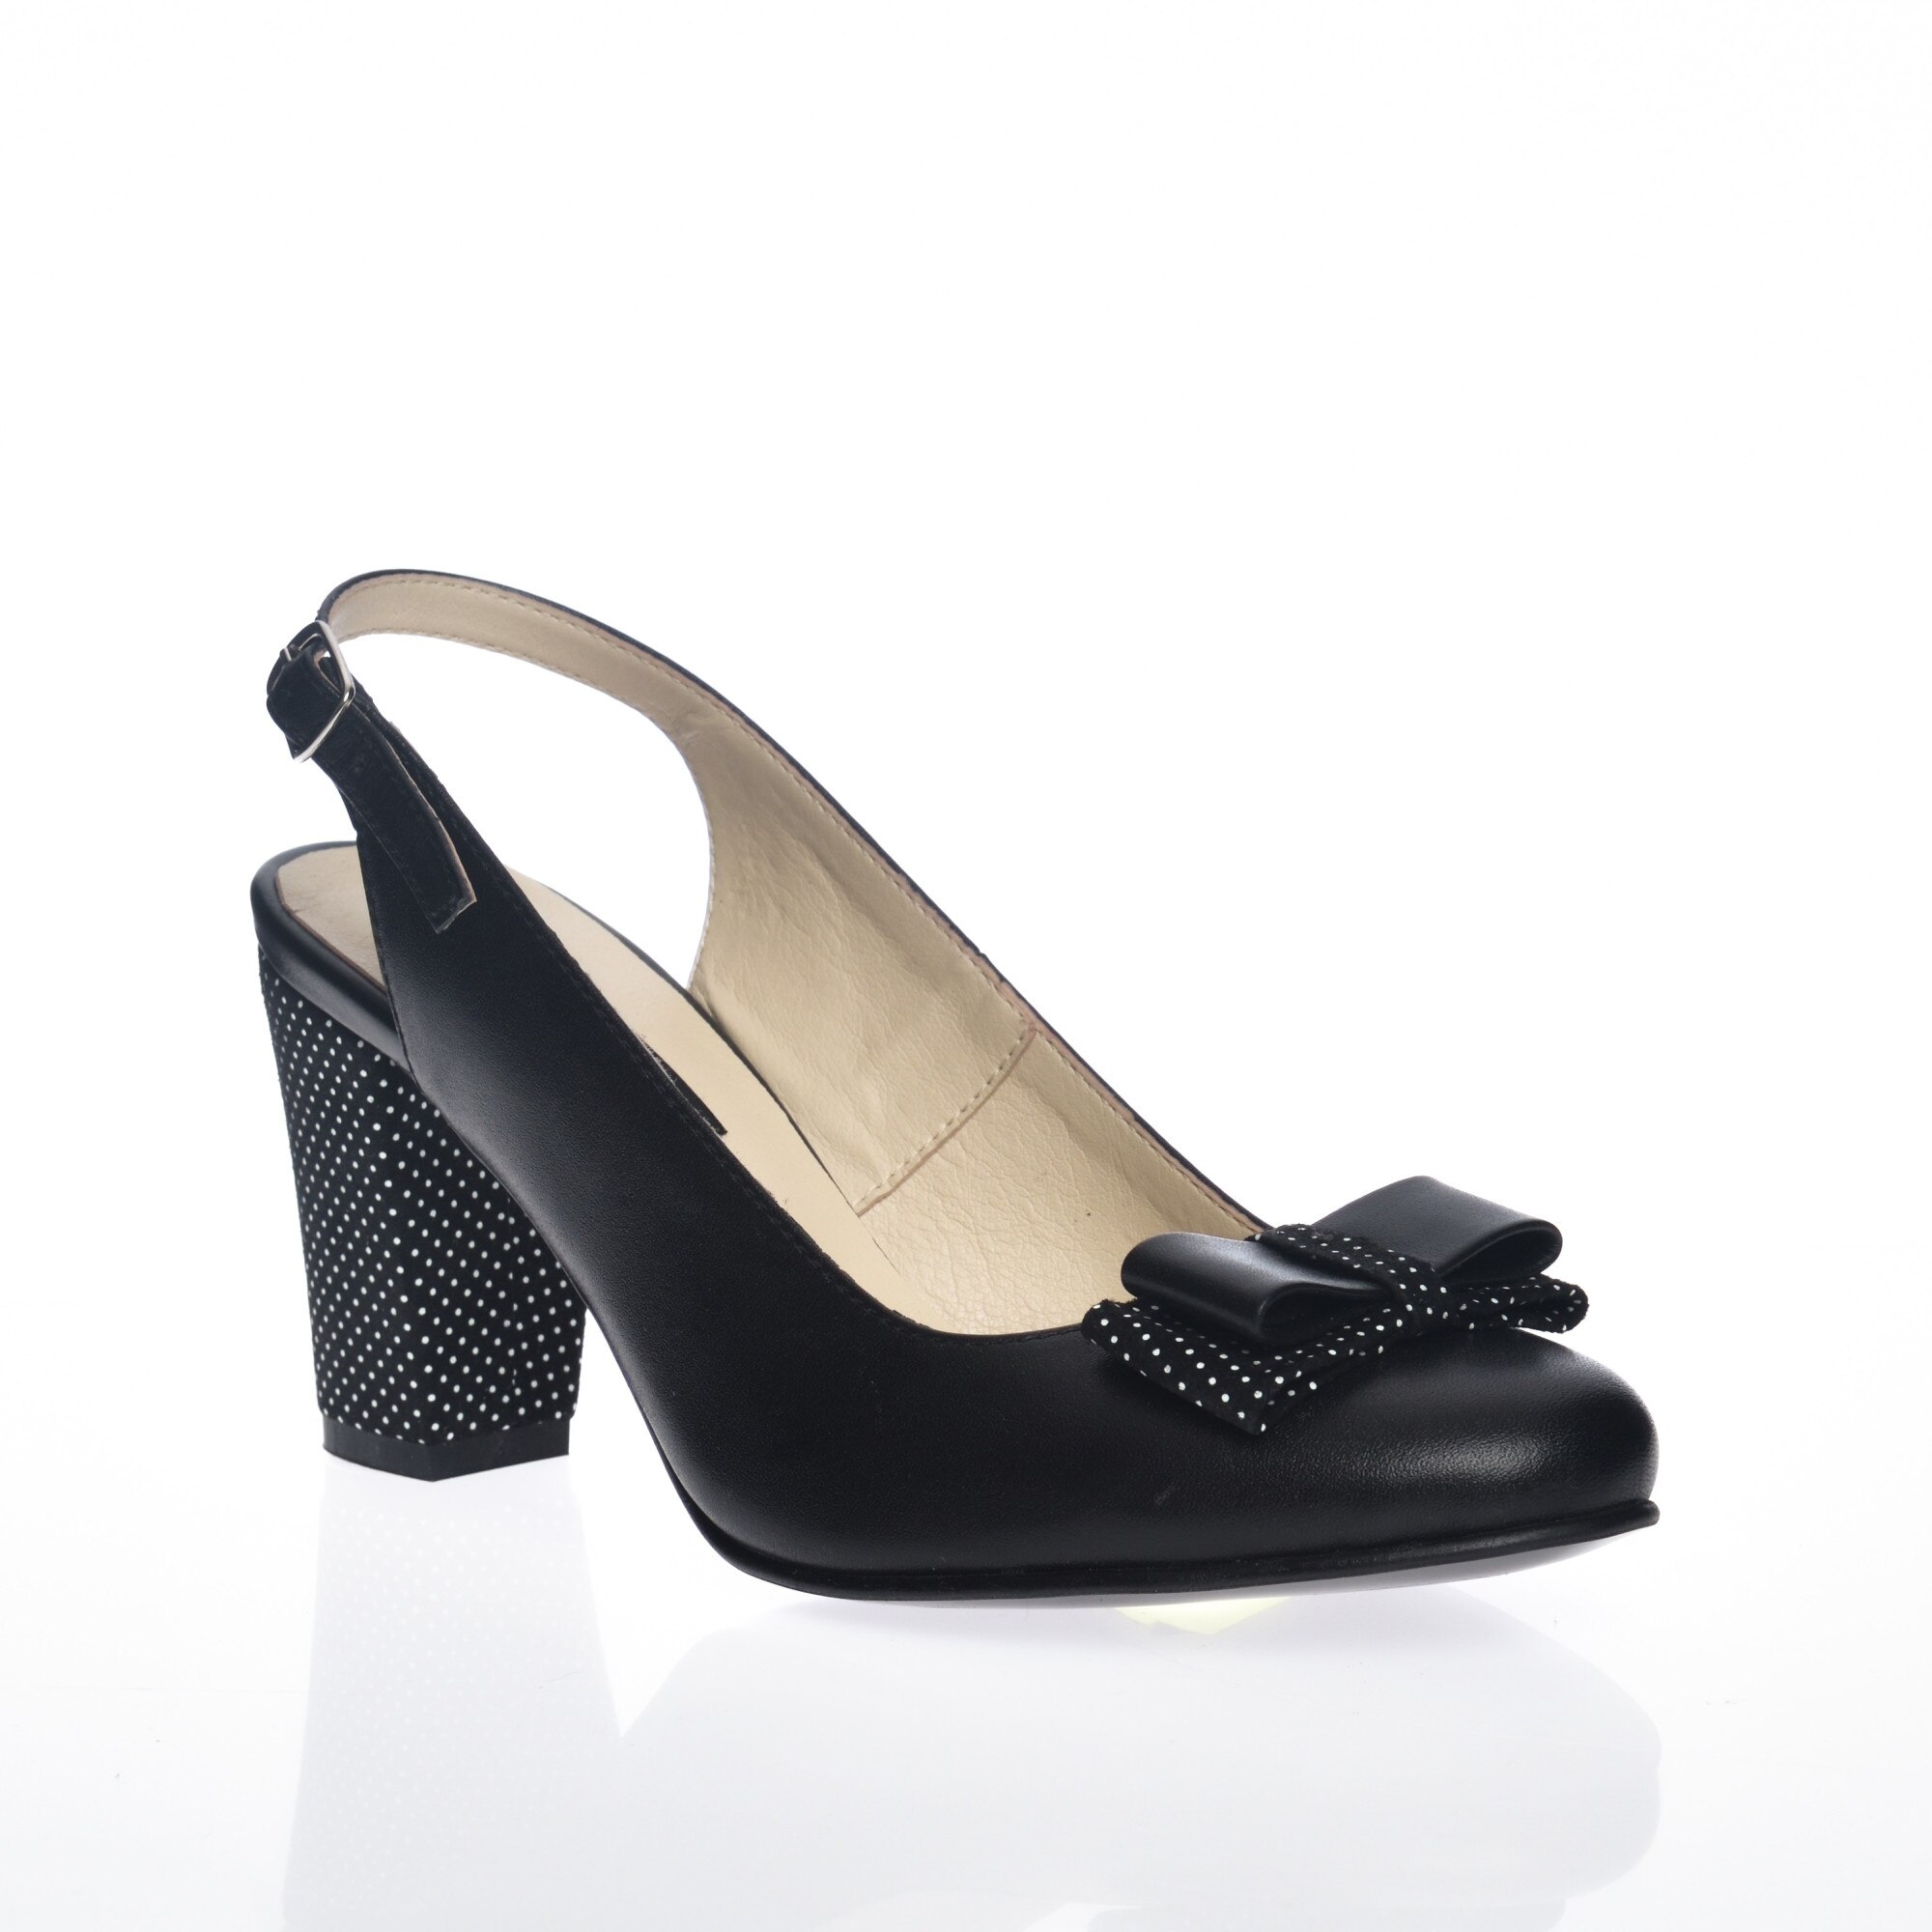 Sandale dama din piele naturala - Negru cu buline - V5 NB, EU - eMAG.ro